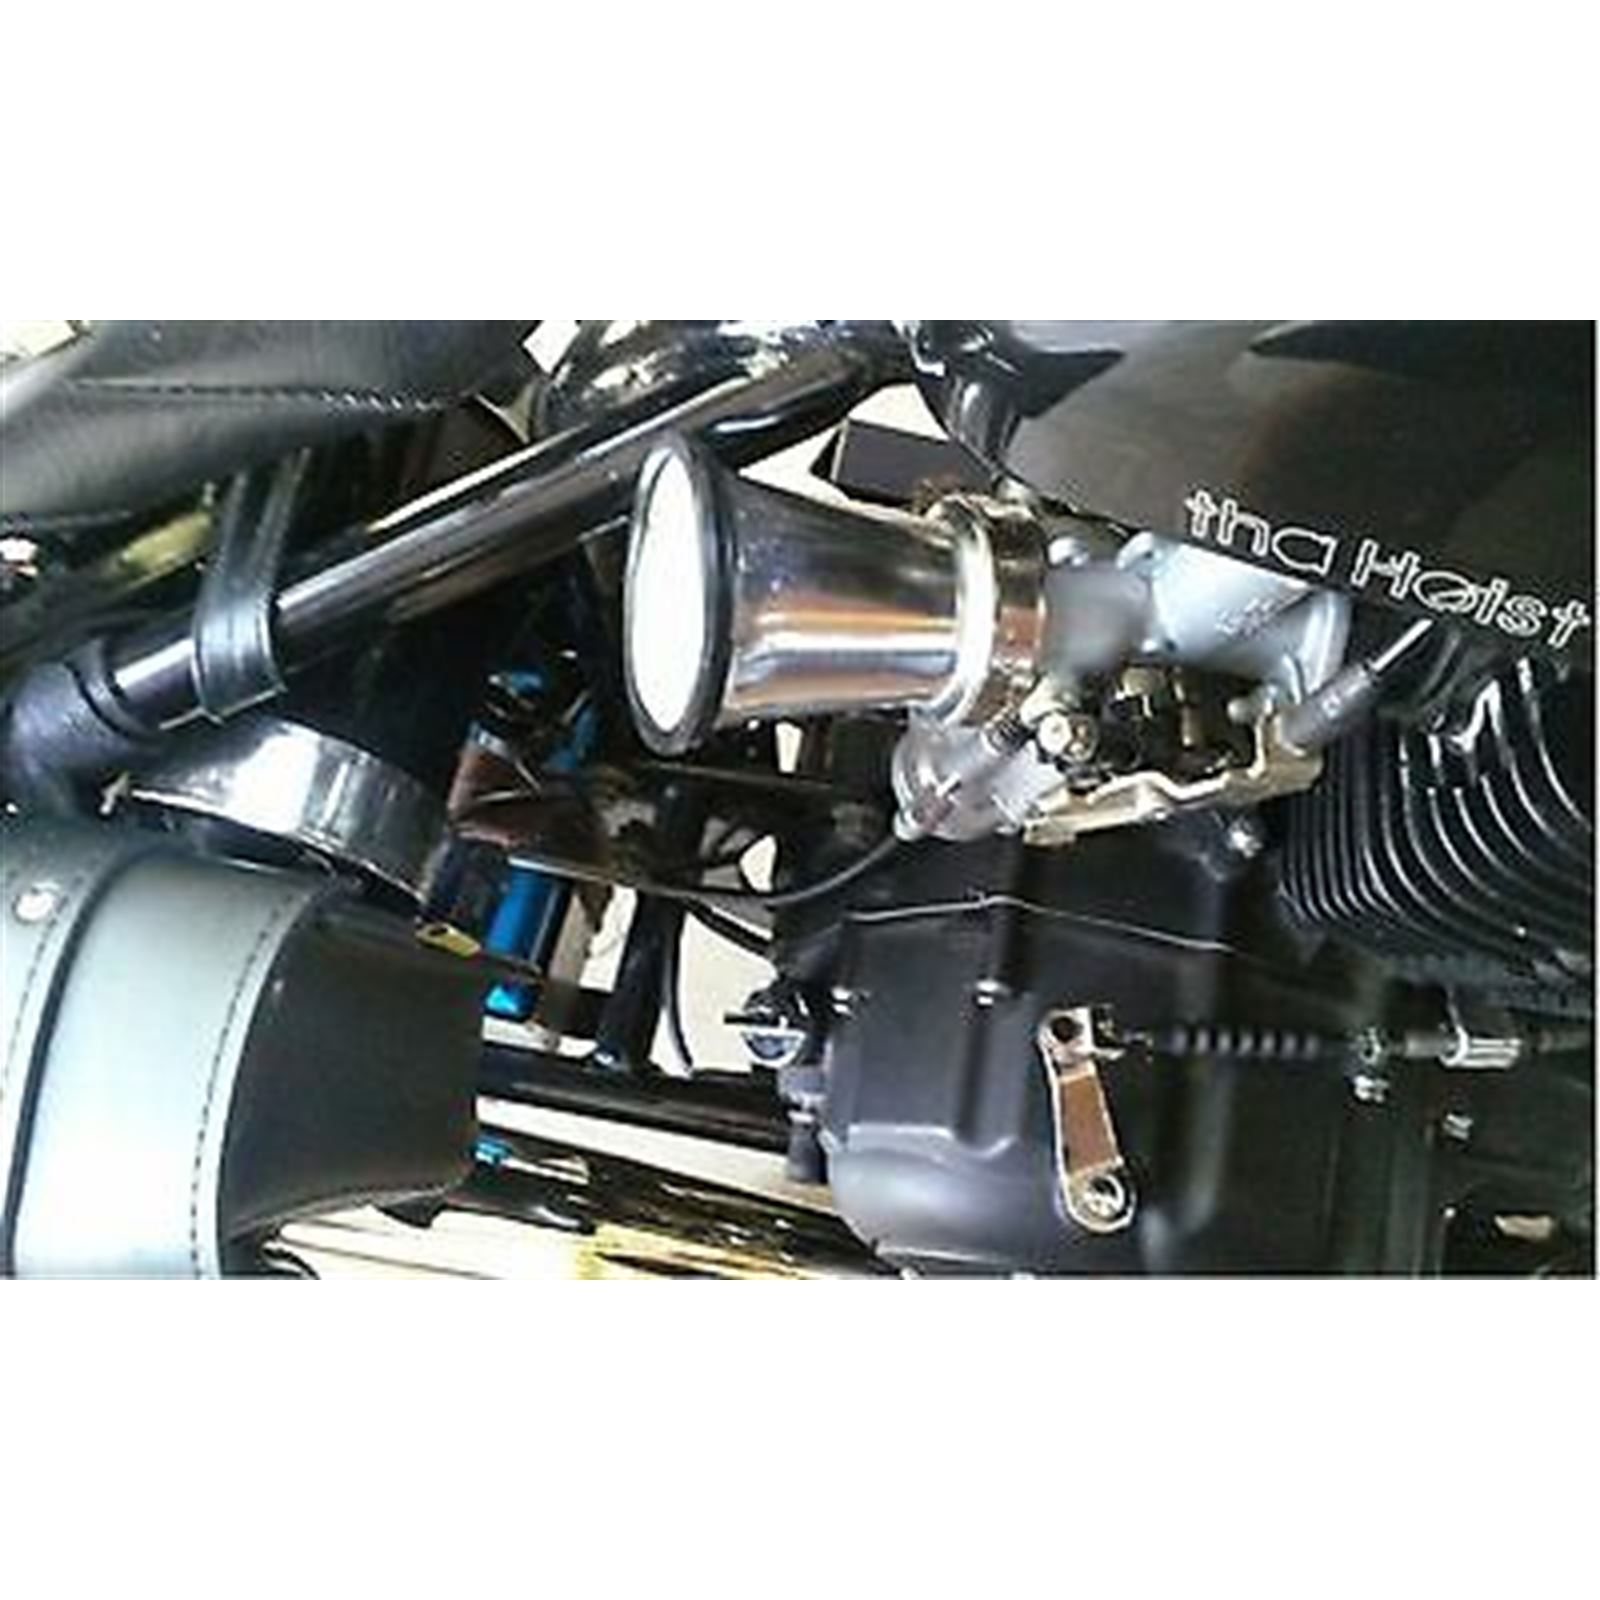 2 X Carb carburetor rebuild repair kit Yamaha XV700 Virago Ref.18